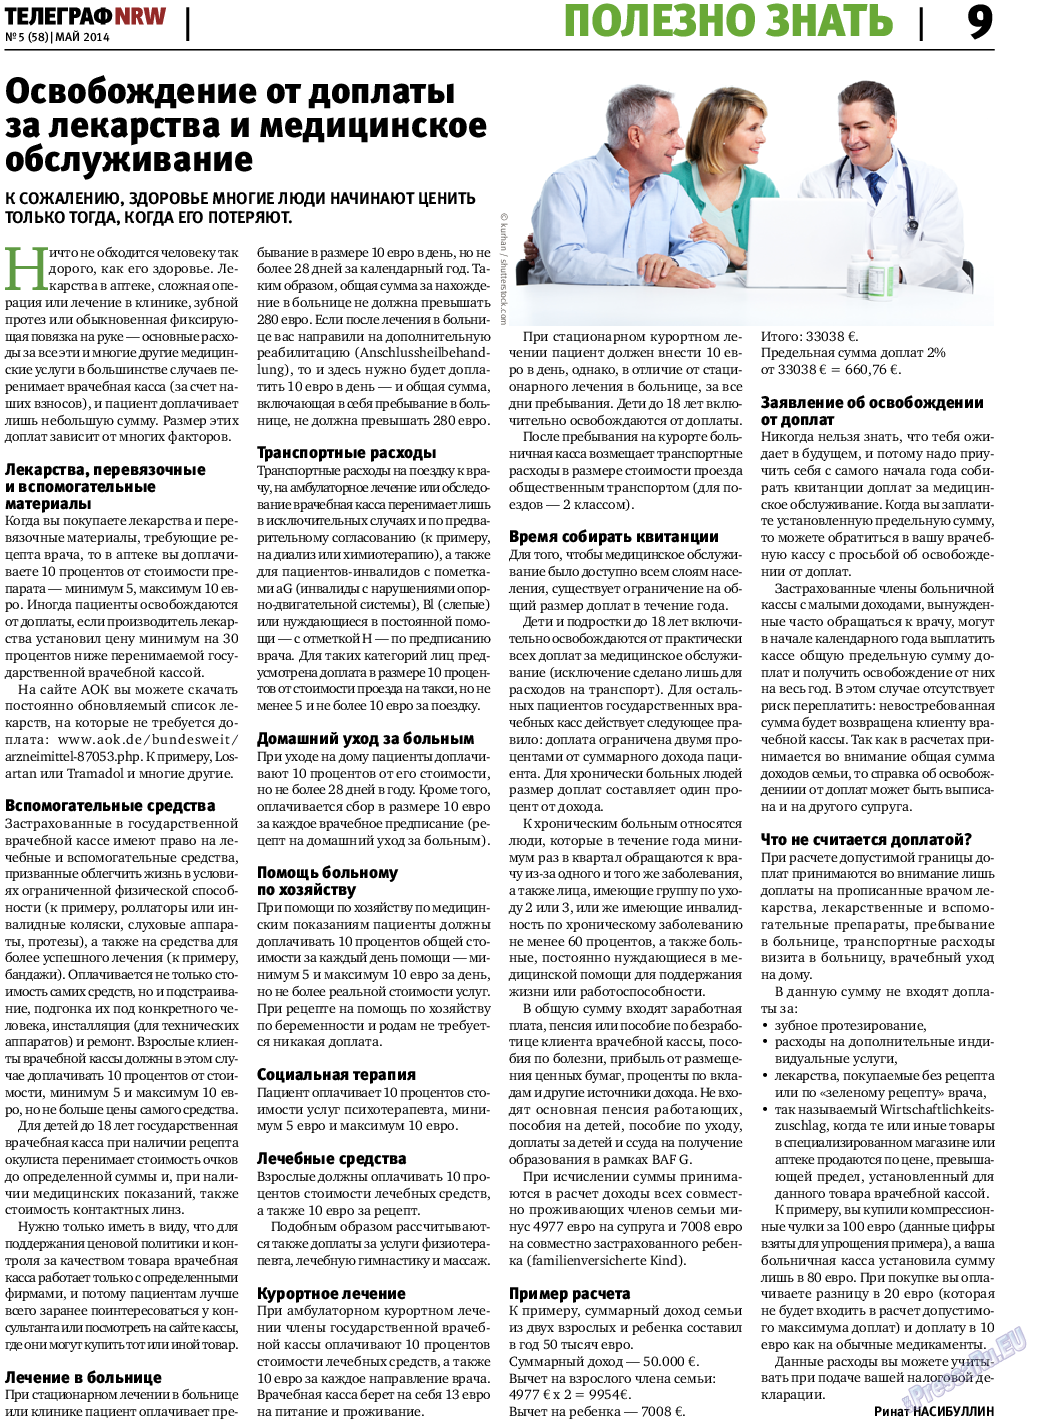 Телеграф NRW (газета). 2014 год, номер 5, стр. 9